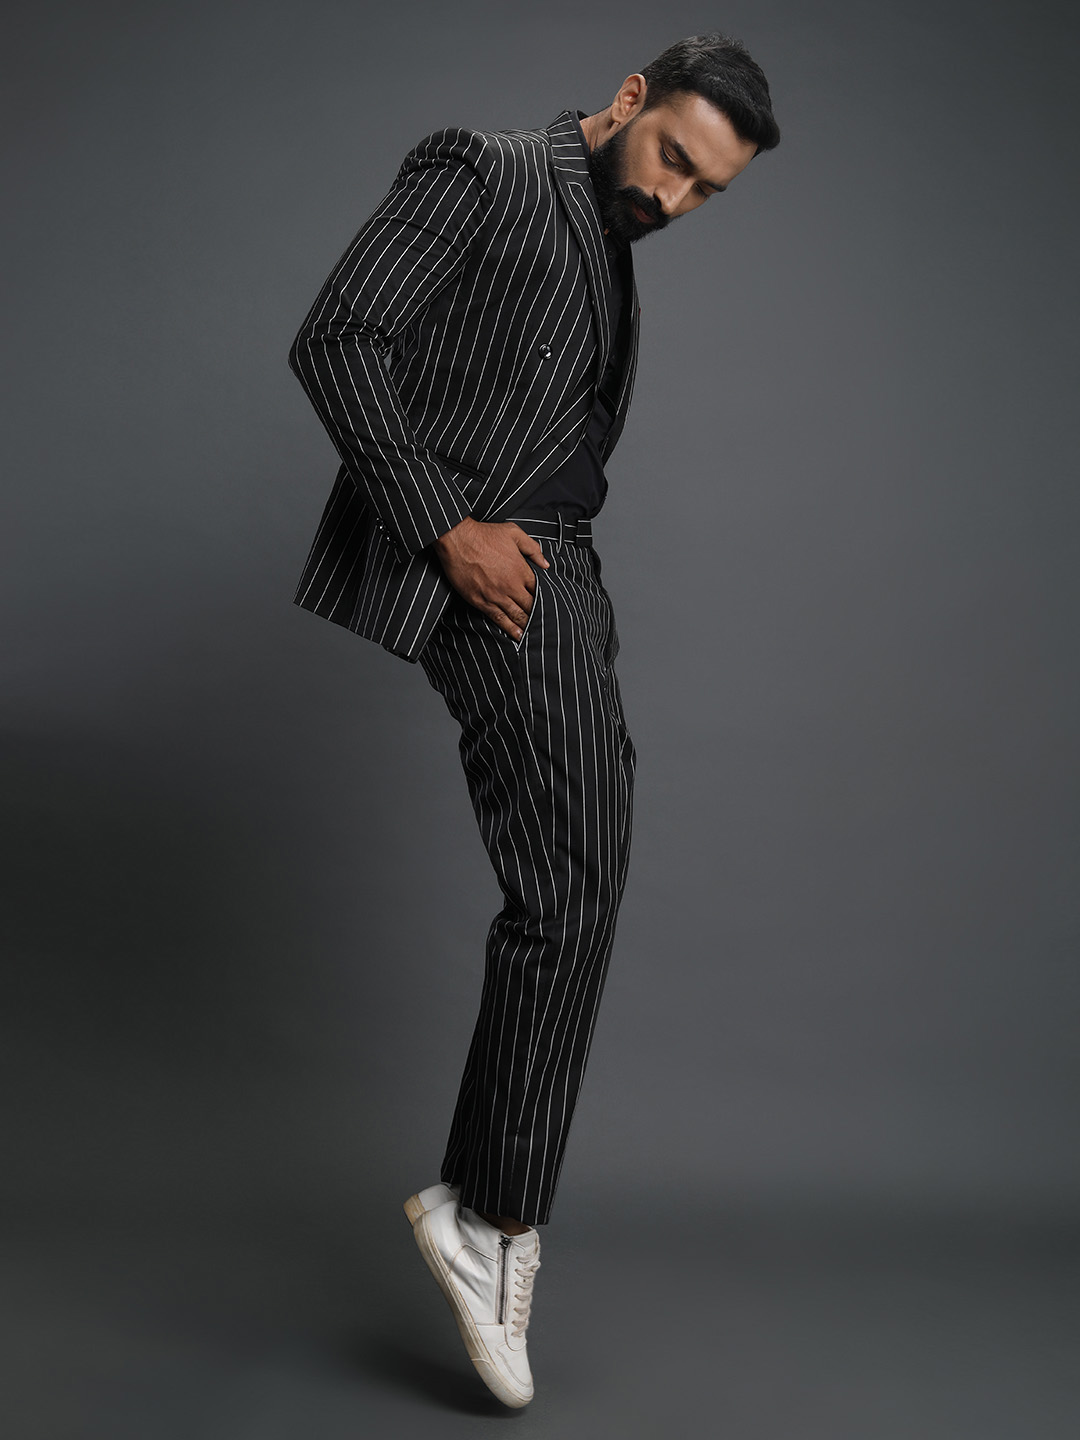 Black Stripes 6 button Suit